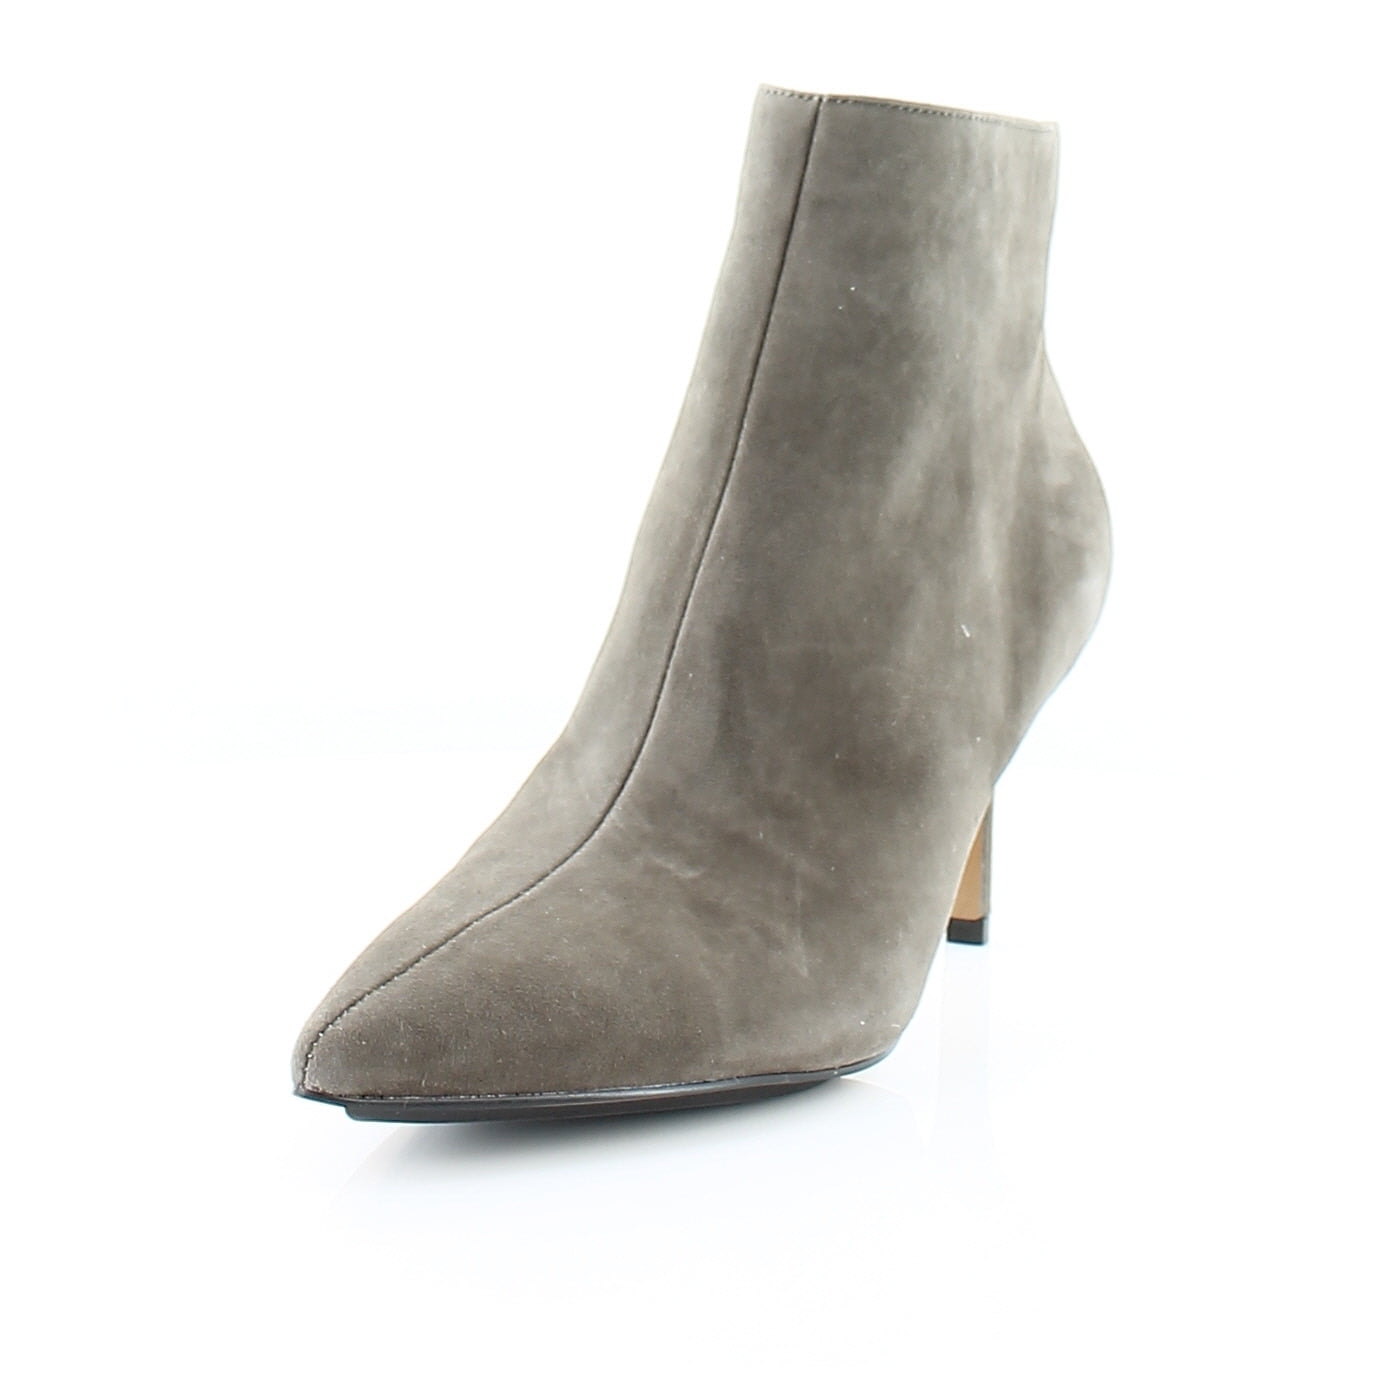 Vince Camuto Freikti Women's Boots Pale Grey Size 11 M - Walmart.com